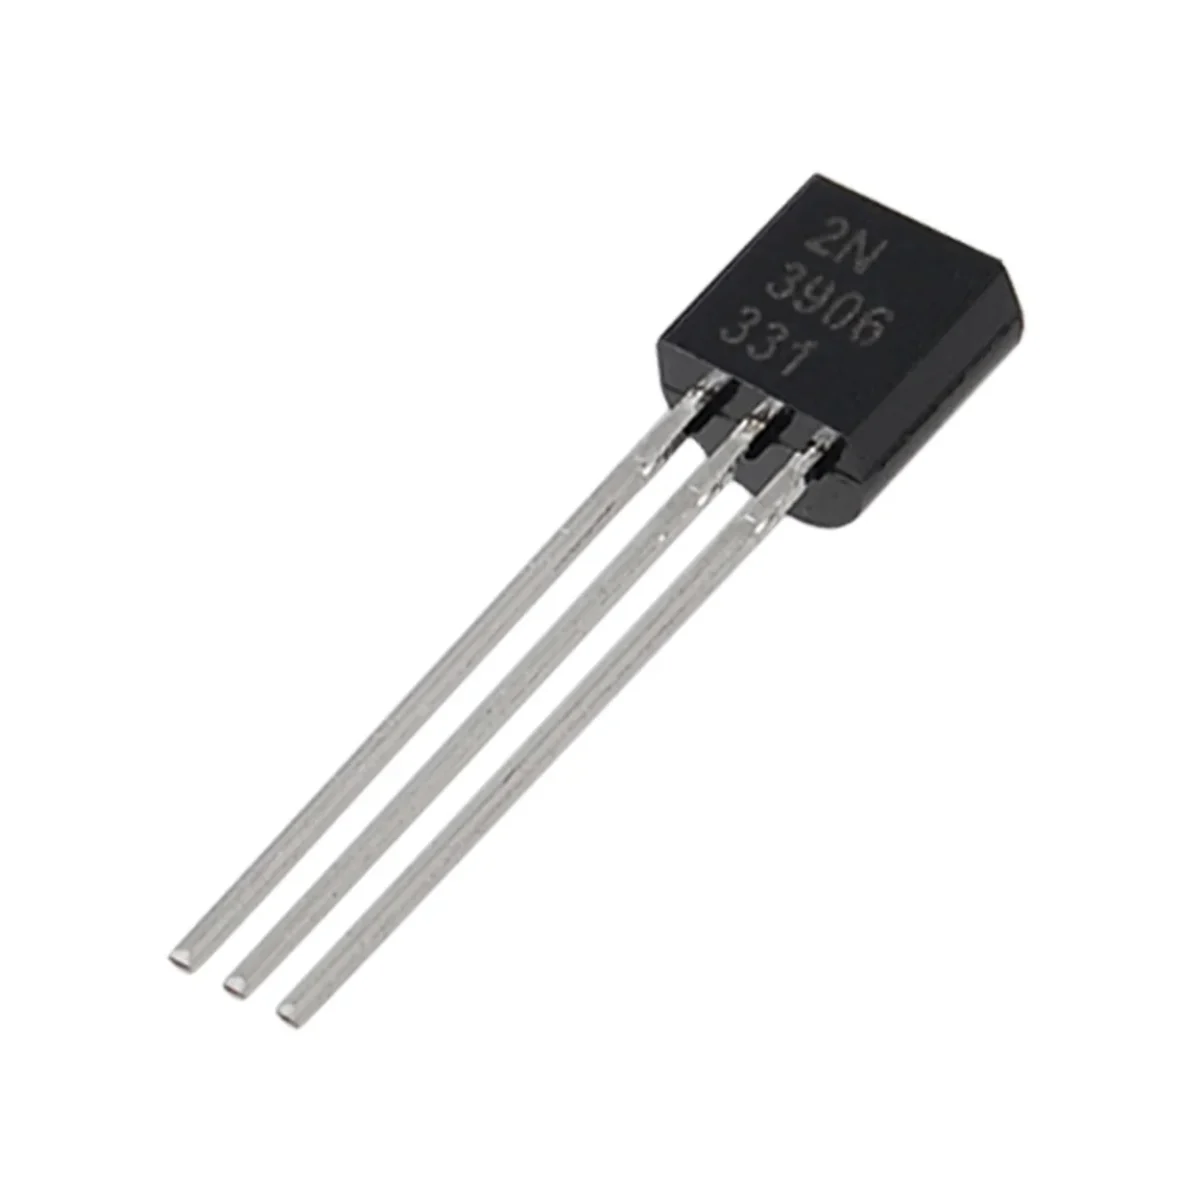 Transistor 2N3906 - PNP General Purpose Transistor